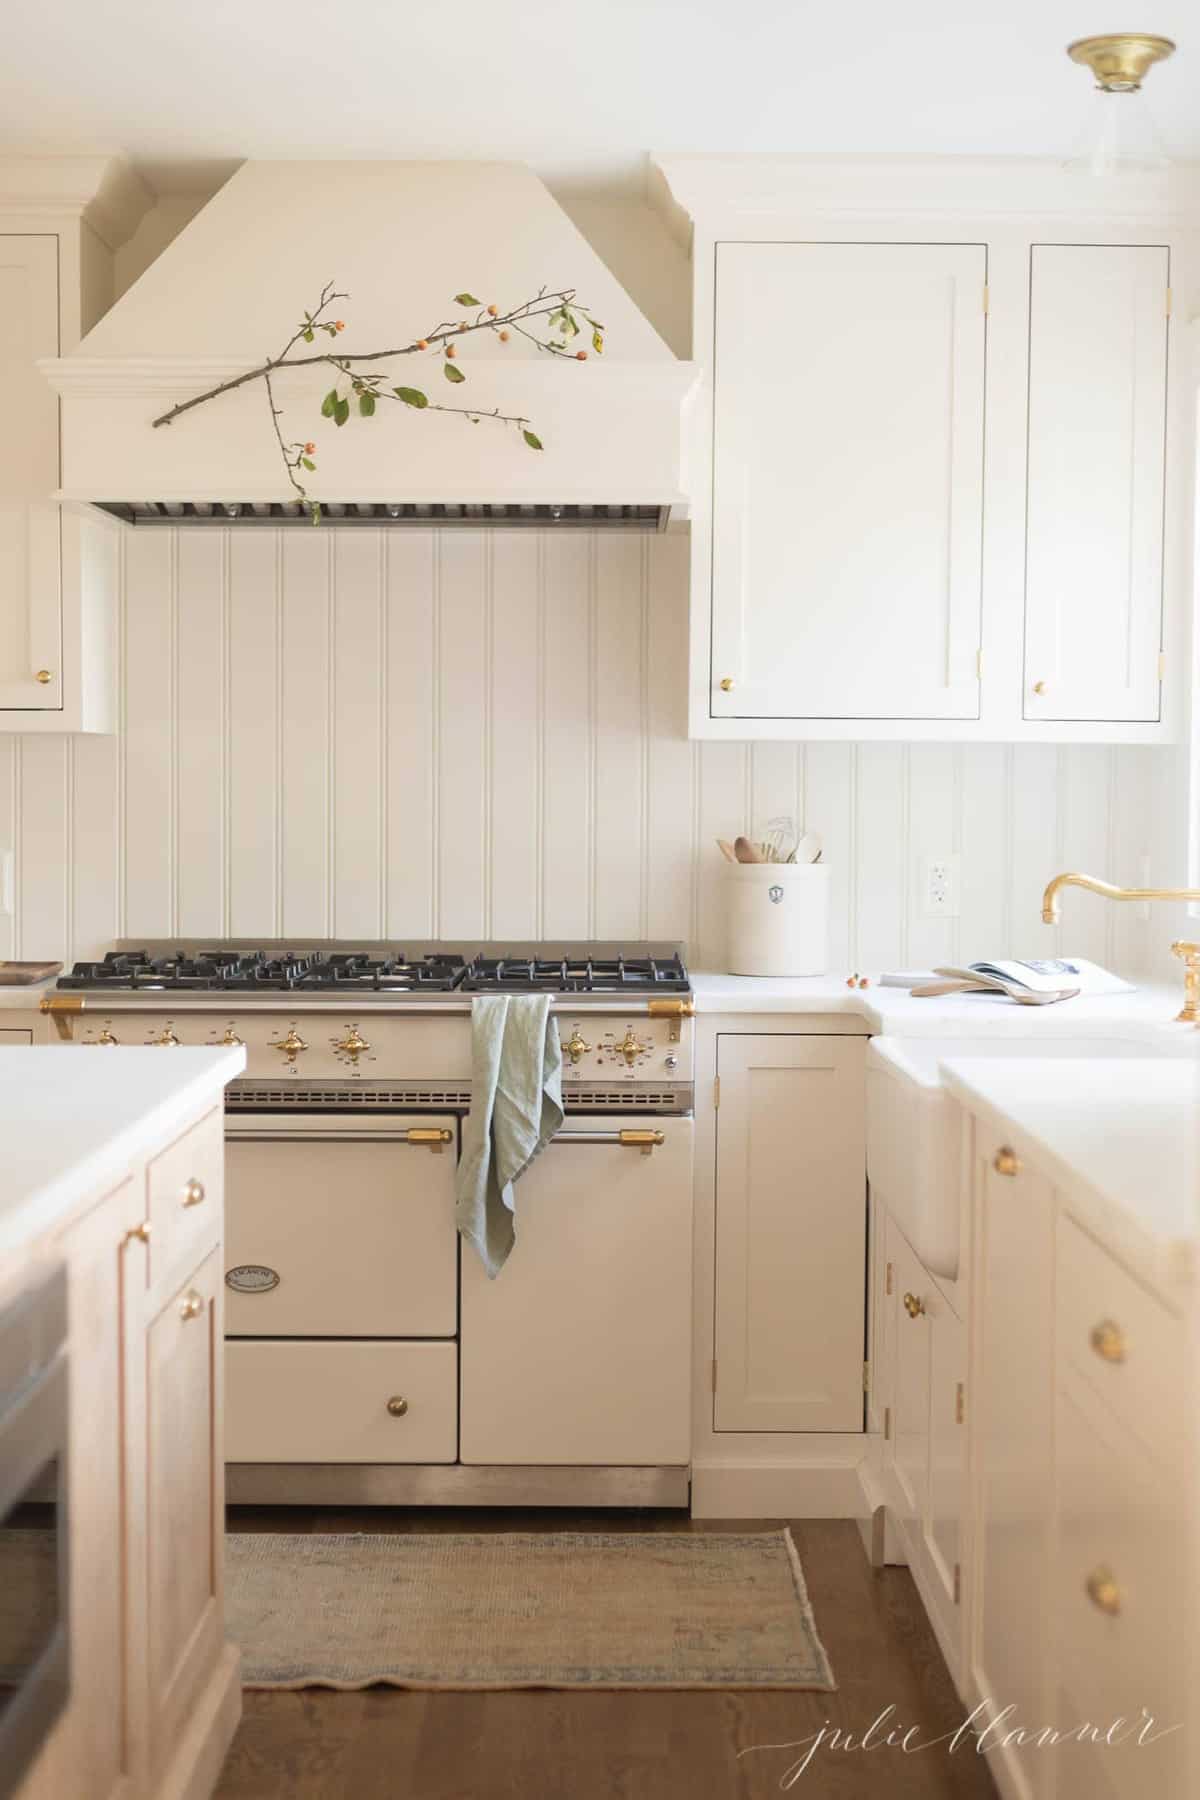 极简的厨房设计，以奶油橱柜和炉灶为特色。